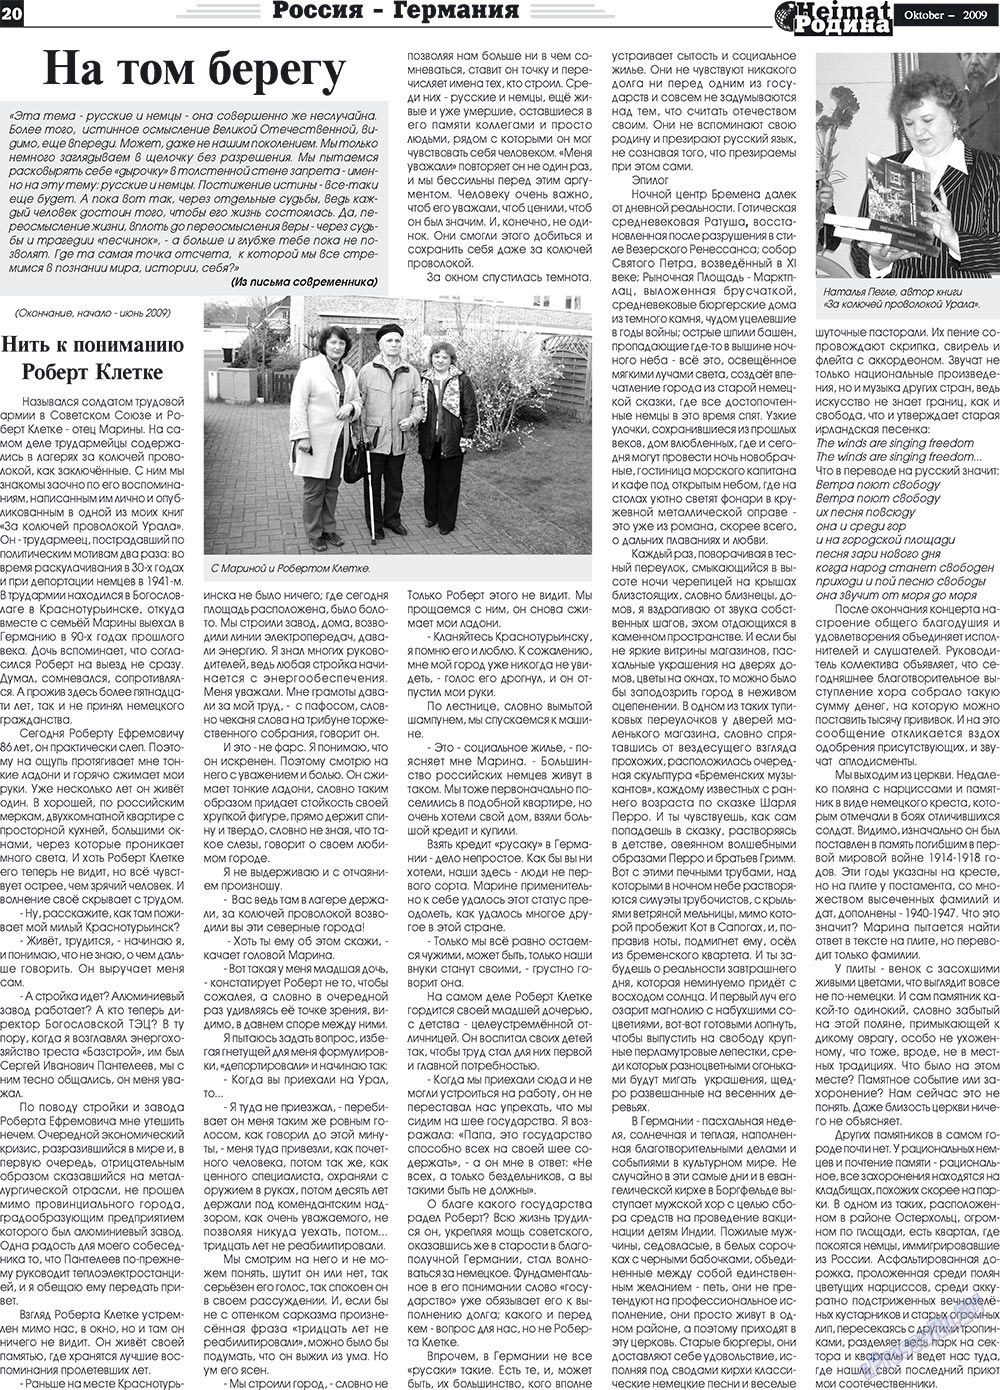 Heimat-Родина (газета). 2009 год, номер 10, стр. 20